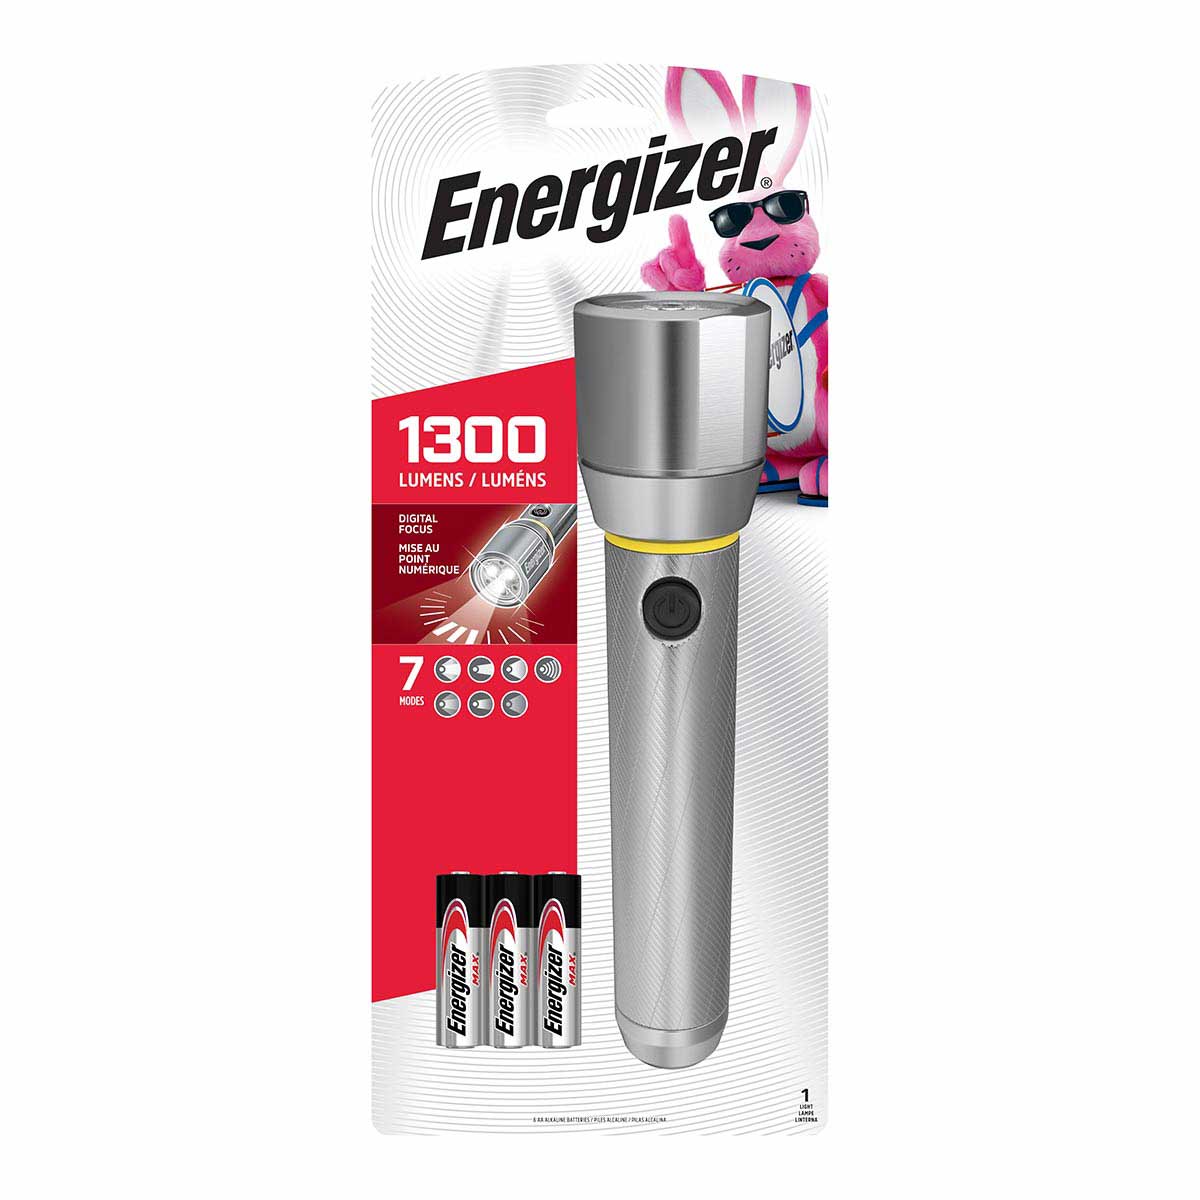 Energizer 1300-Lumen LED Metal Flashlight